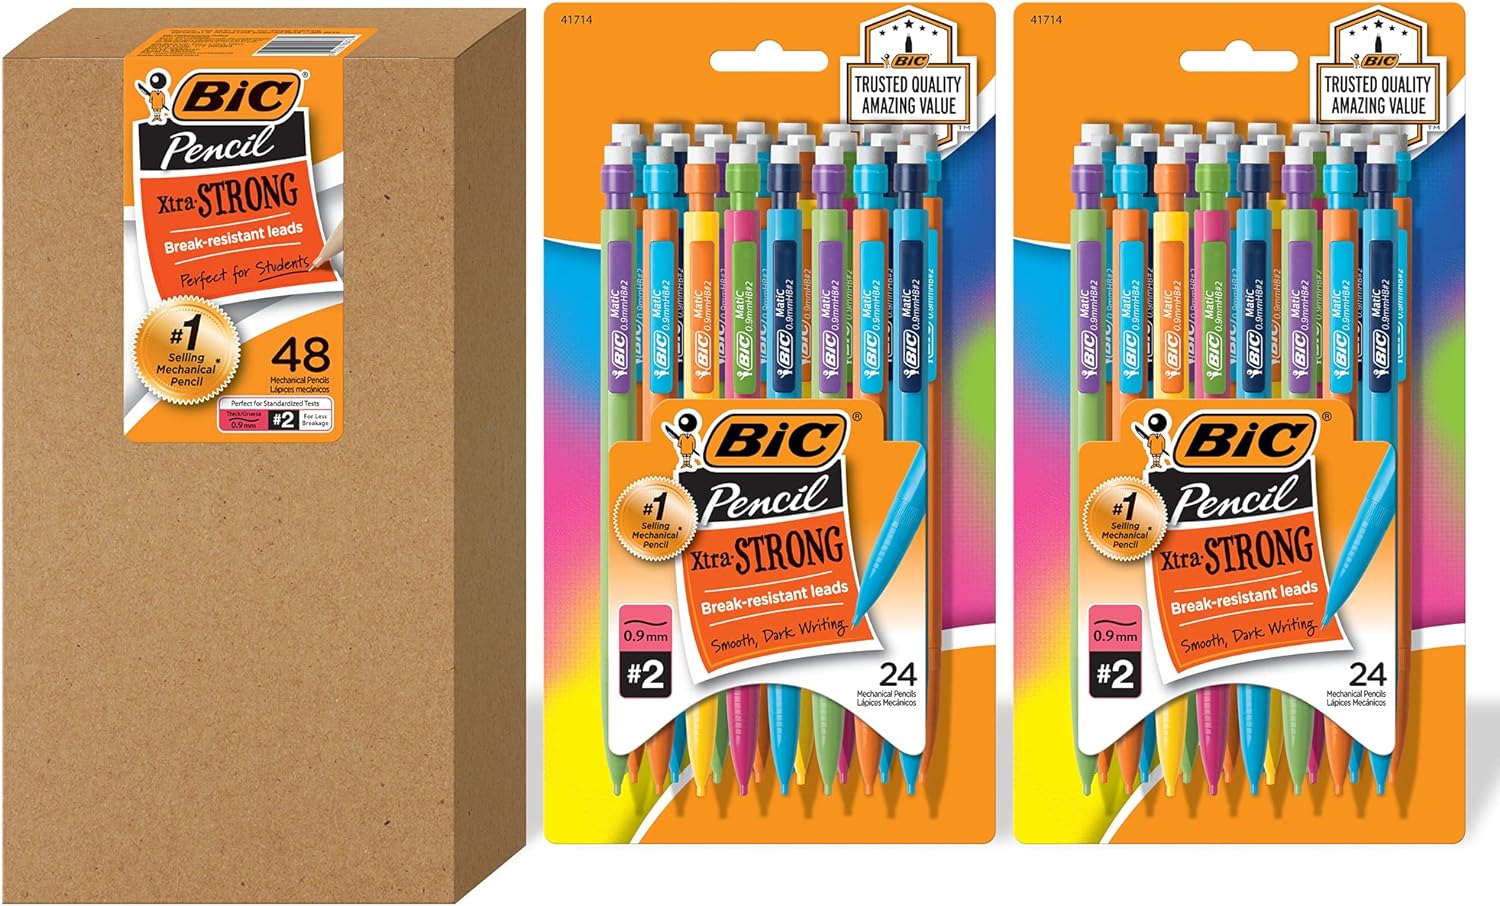 BIC Pencil Lead Refills, Medium Point (0.7mm), 30ct (L730P1),Black